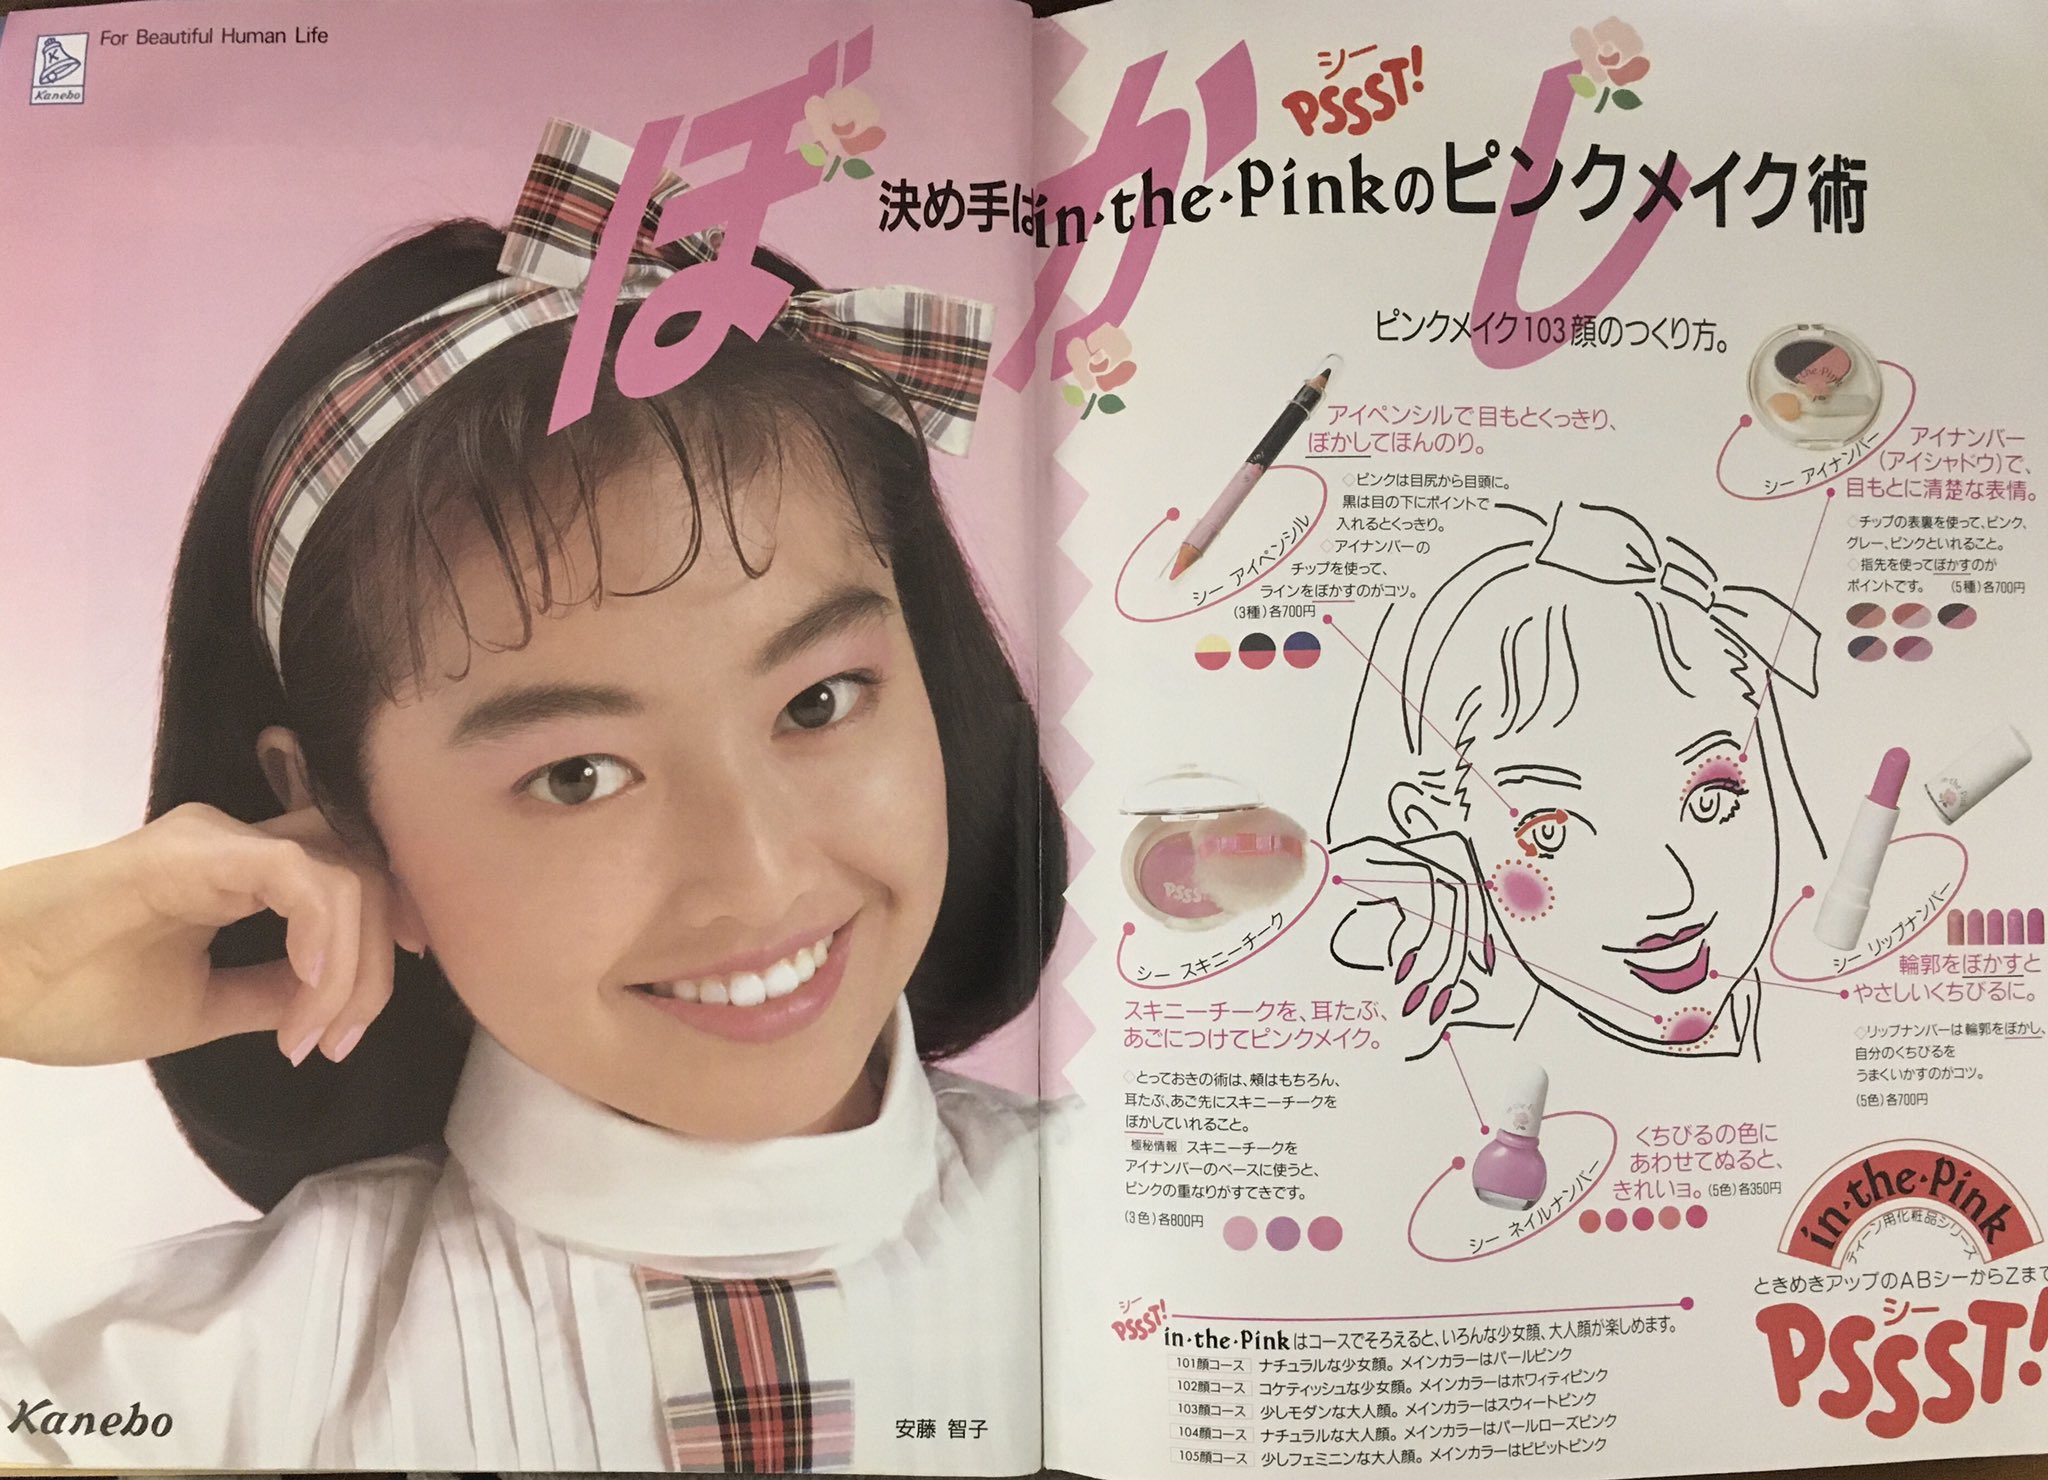 19年のこかば 19年のトレンド色はピンクだったんだね 化粧品はこぞってピンク一押し 昭和 19年3月の広告 T Co P0lyst2xpv Twitter